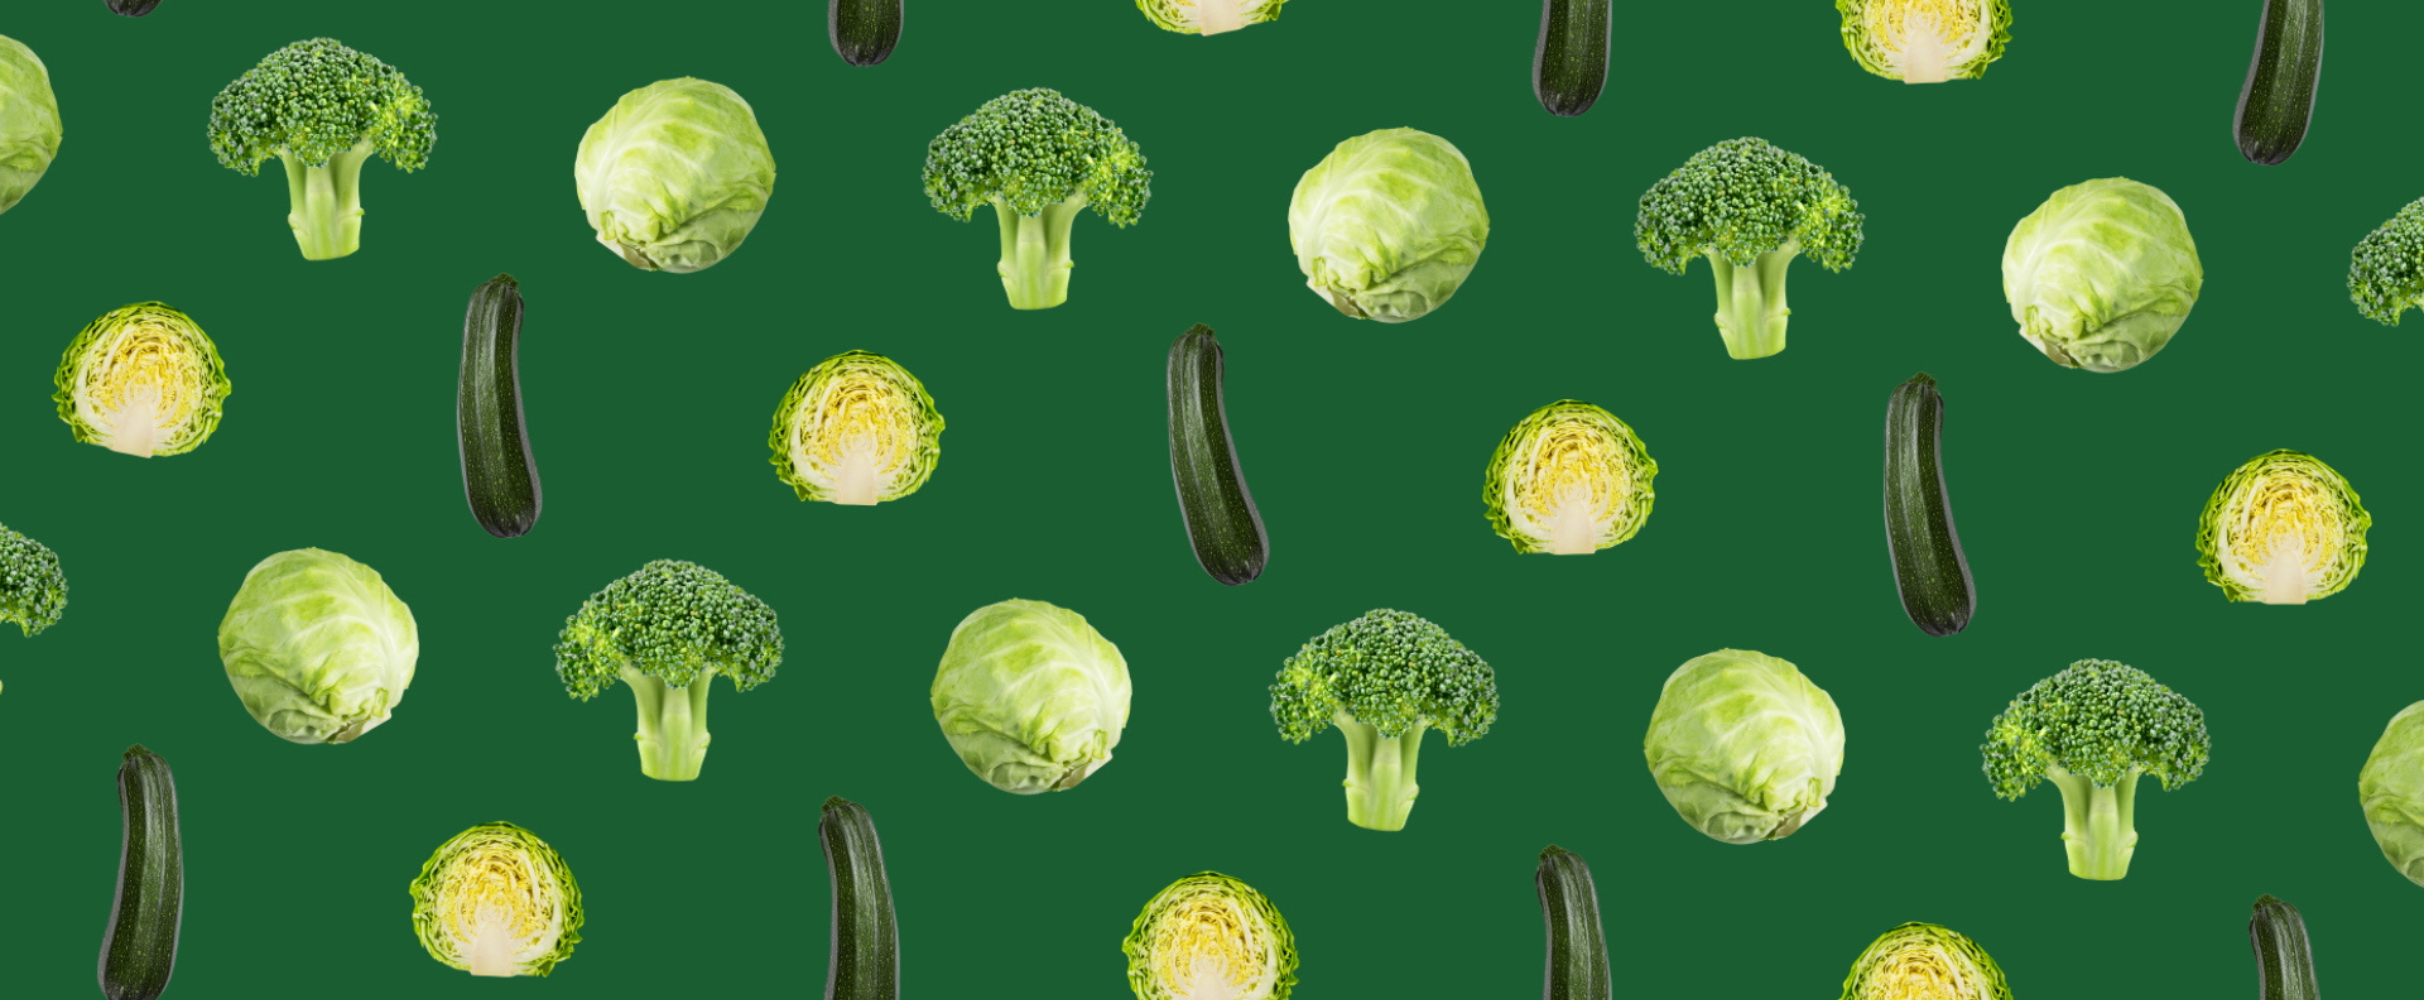 Groen doen: zoveel gram groente zou je dagelijks moeten eten 